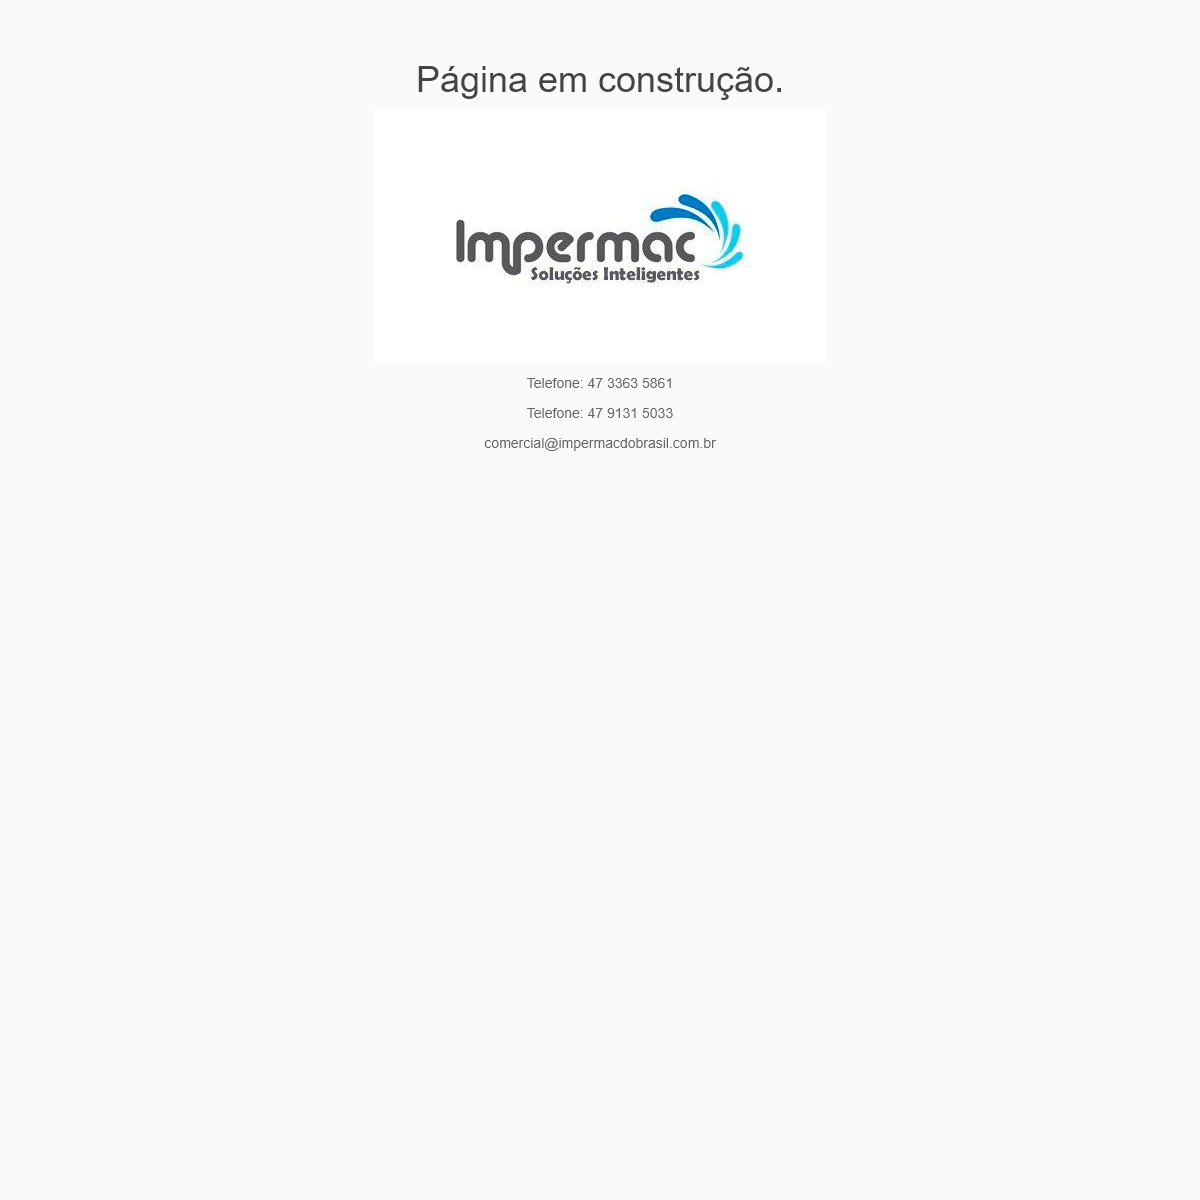 A complete backup of impermacdobrasil.com.br